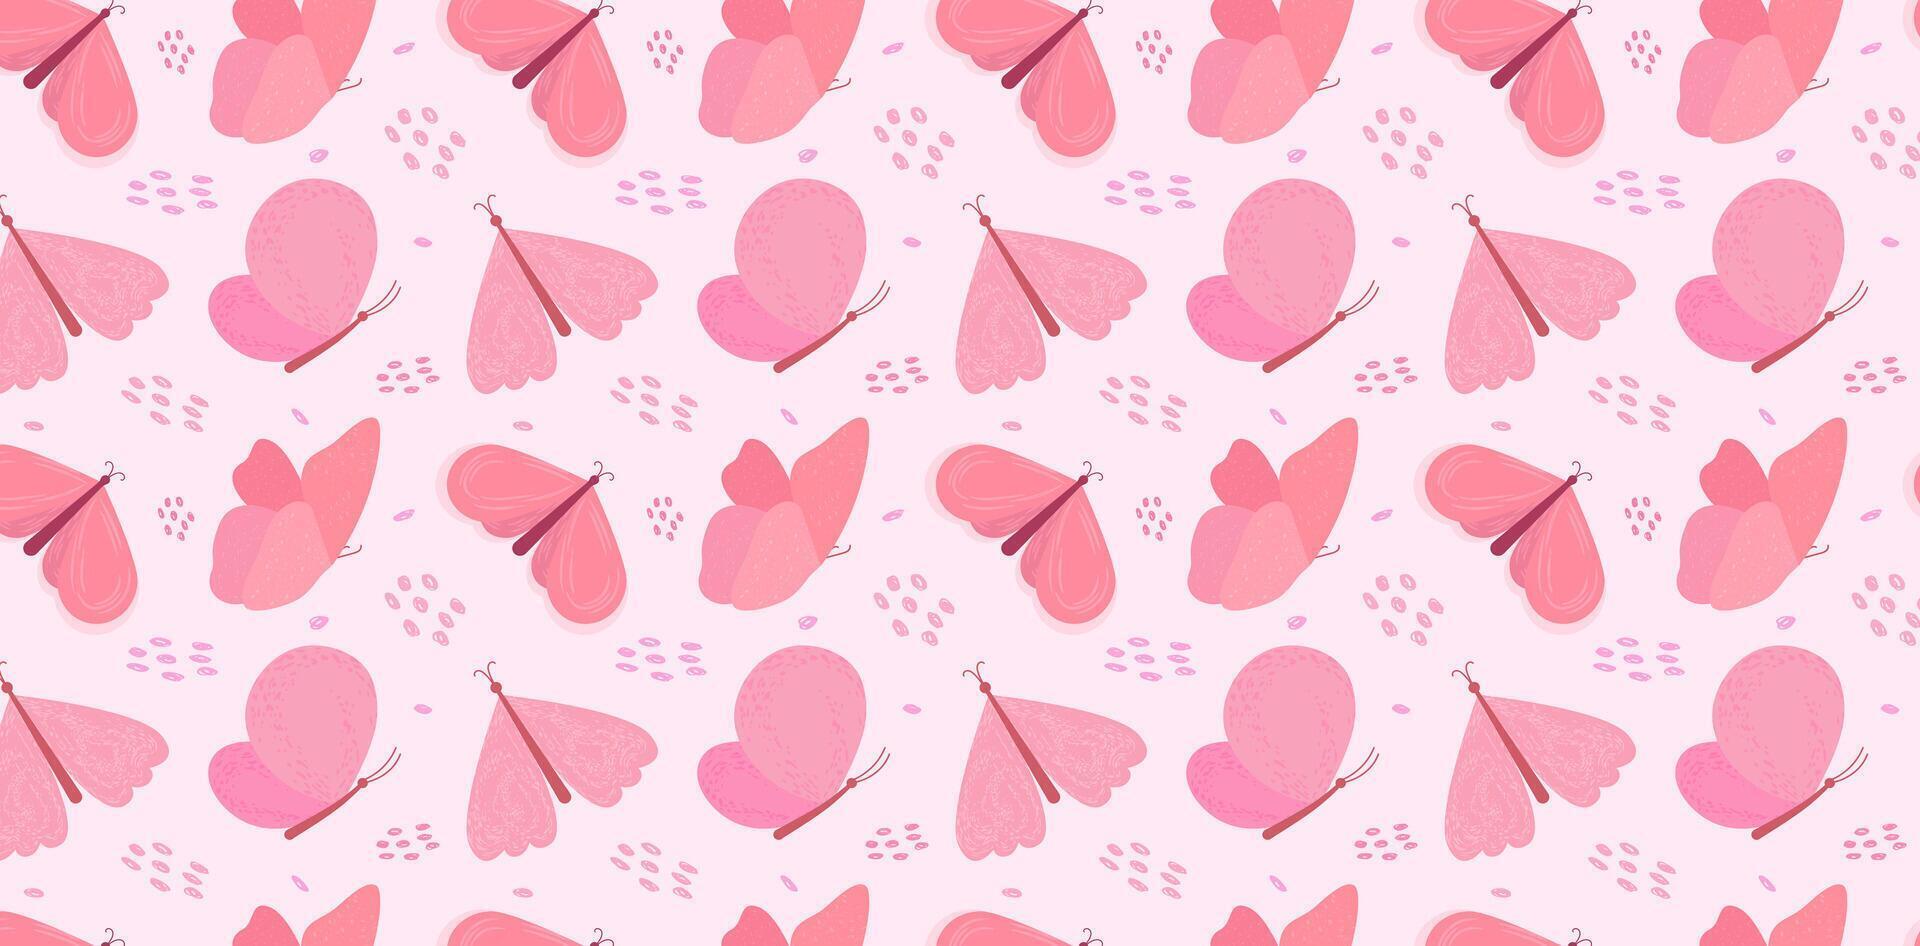 voorjaar patroon met roze vlinders. naadloos roze patroon met vlinders. achtergrond voor voorjaar spandoeken, ontwerp Sjablonen, enz. concept van voorjaar en moeder dag. vector illustratie